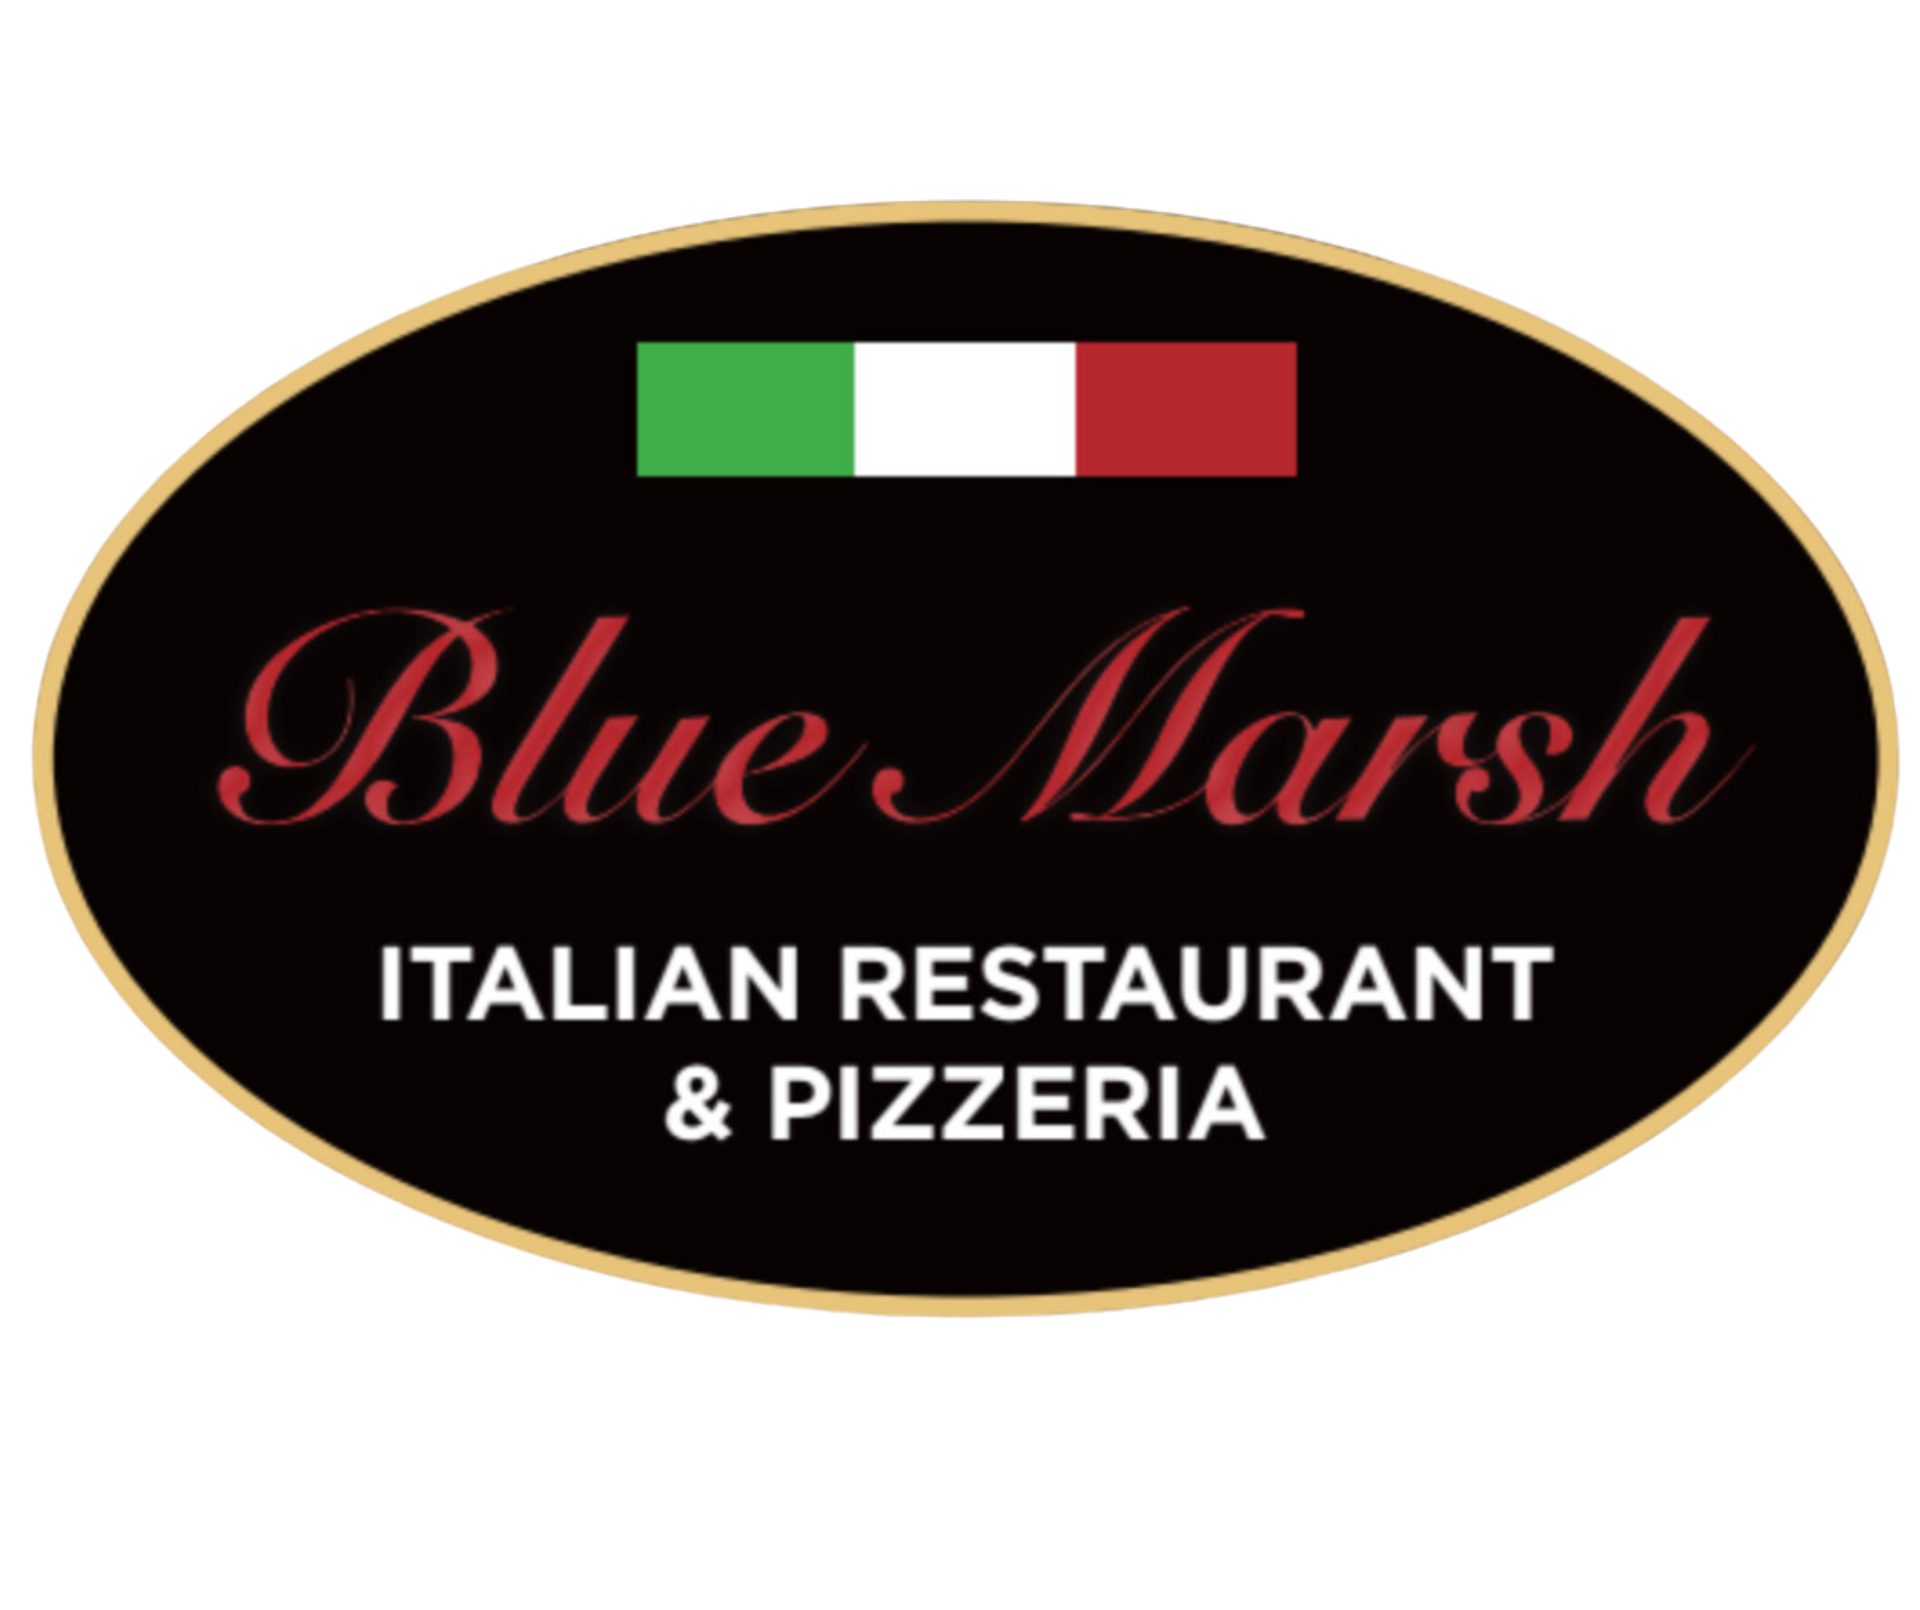 The logo for blue marsh italian restaurant and pizzeria